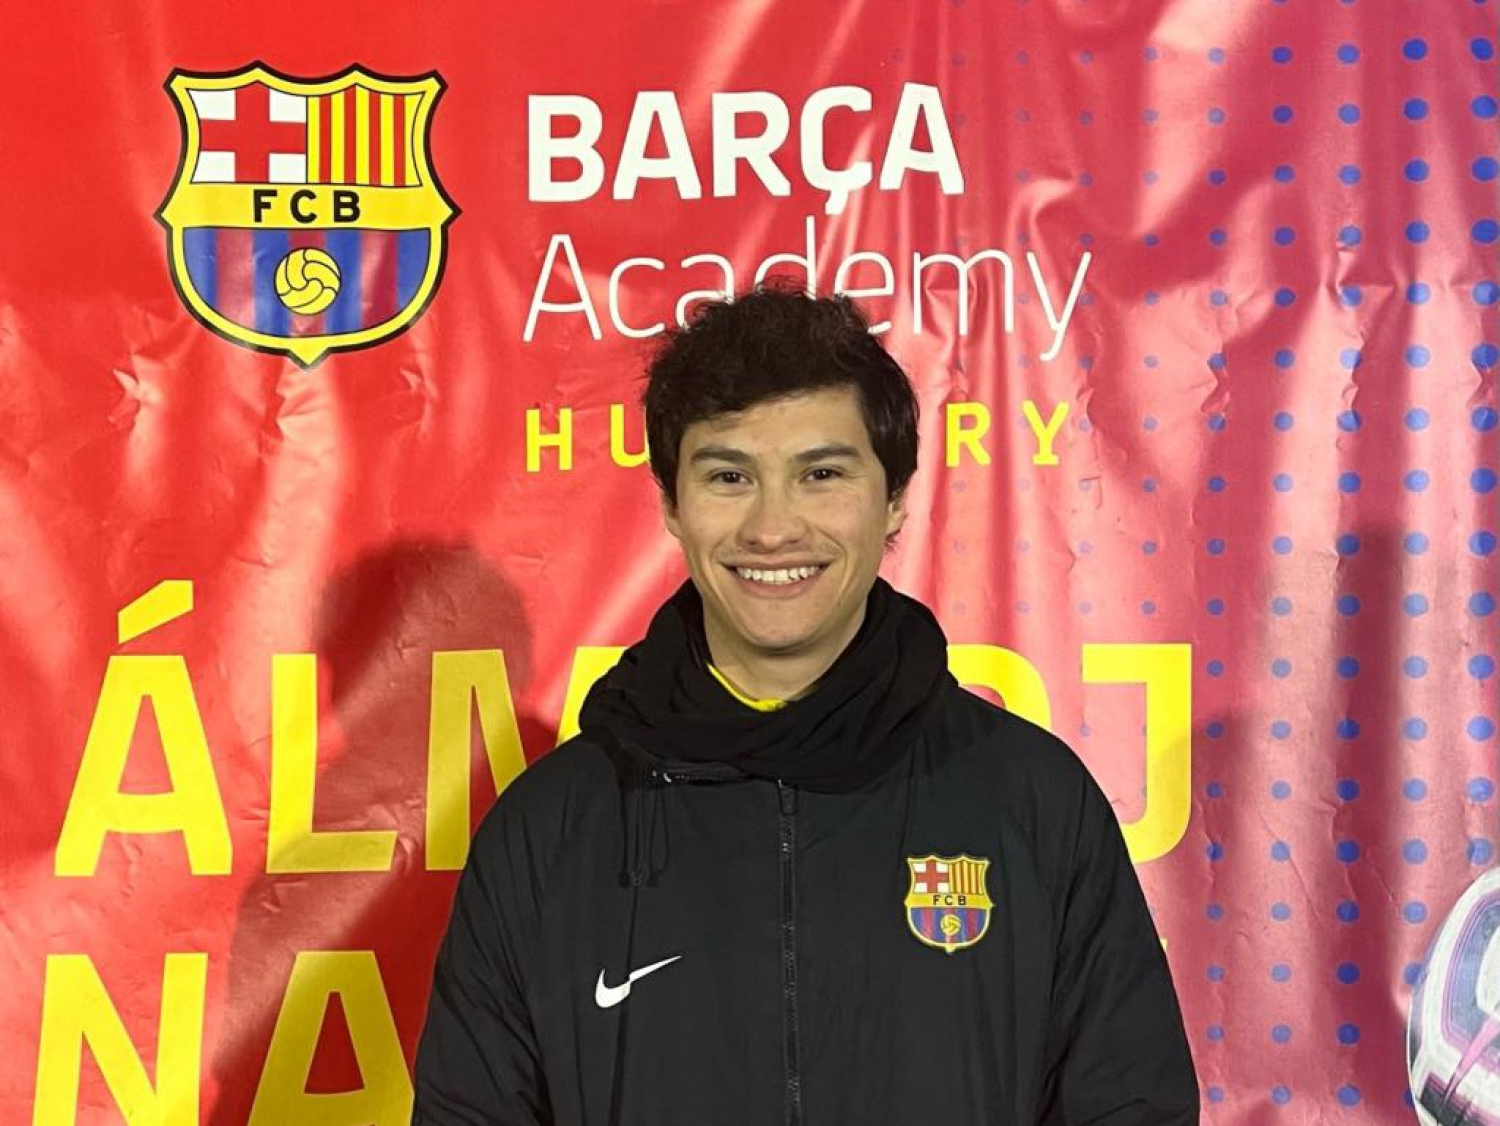 Tíz év barcelonai edzősködés után Akadémiánkon a Pro-licences spanyol tréner